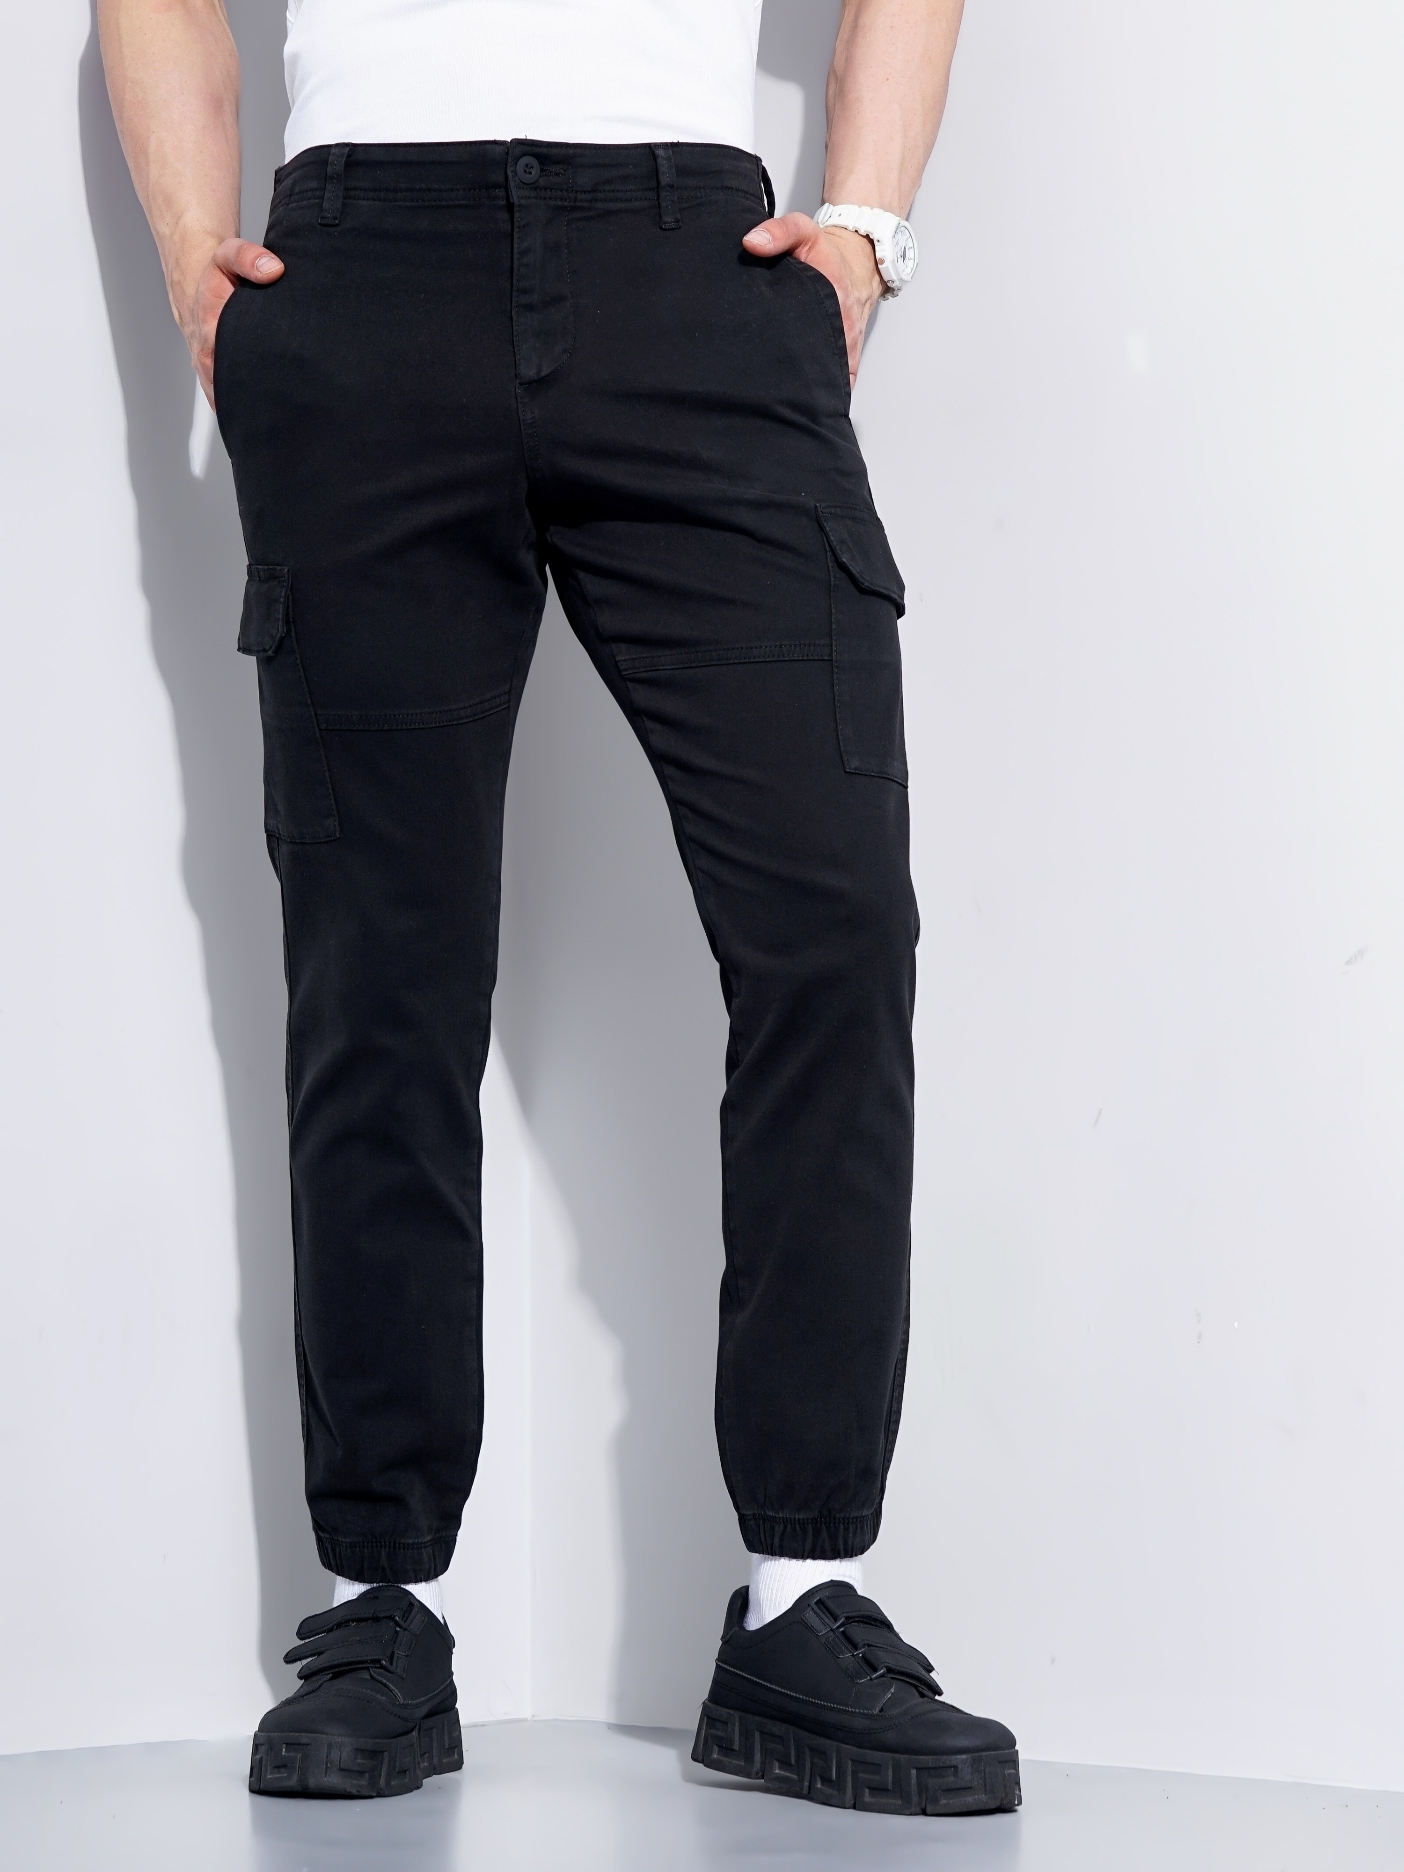 celio | Men's Black Cotton Blend Handwoven Trousers